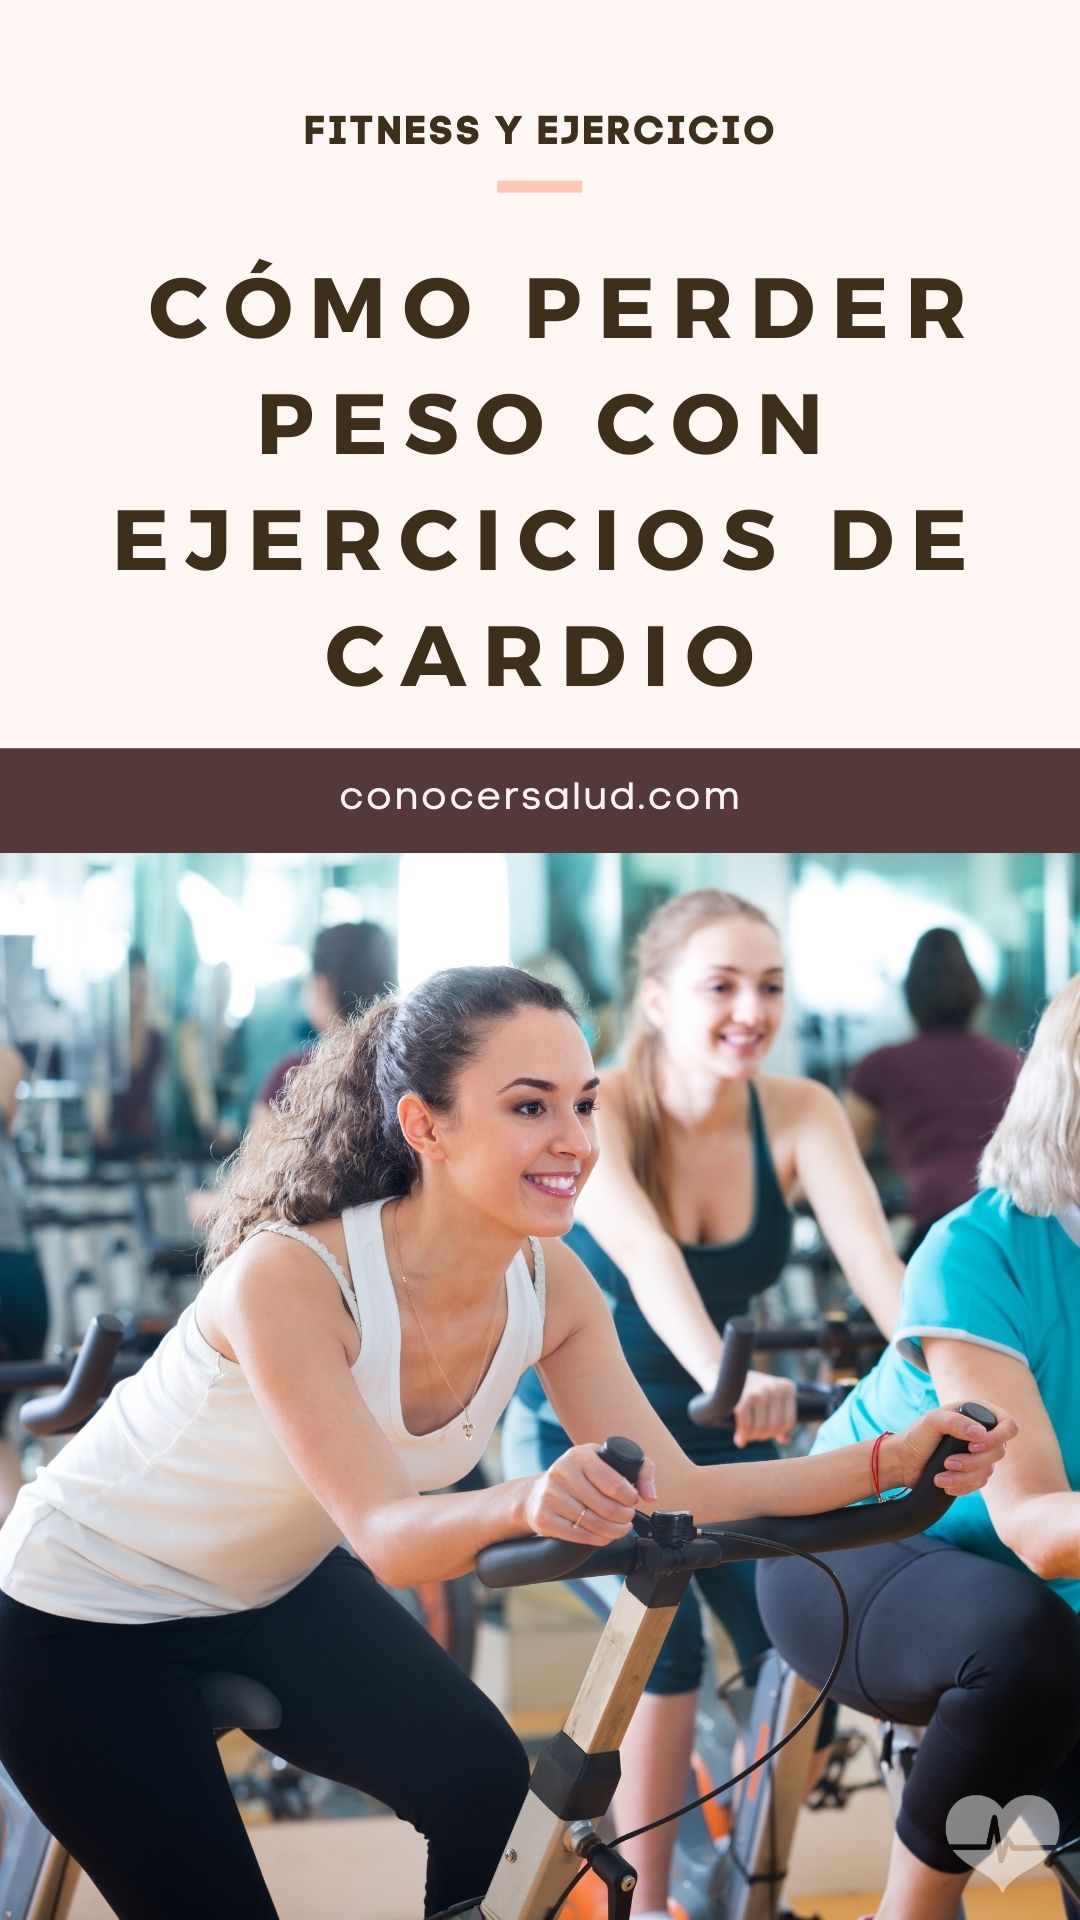 Cómo perder peso con ejercicios cardiovasculares